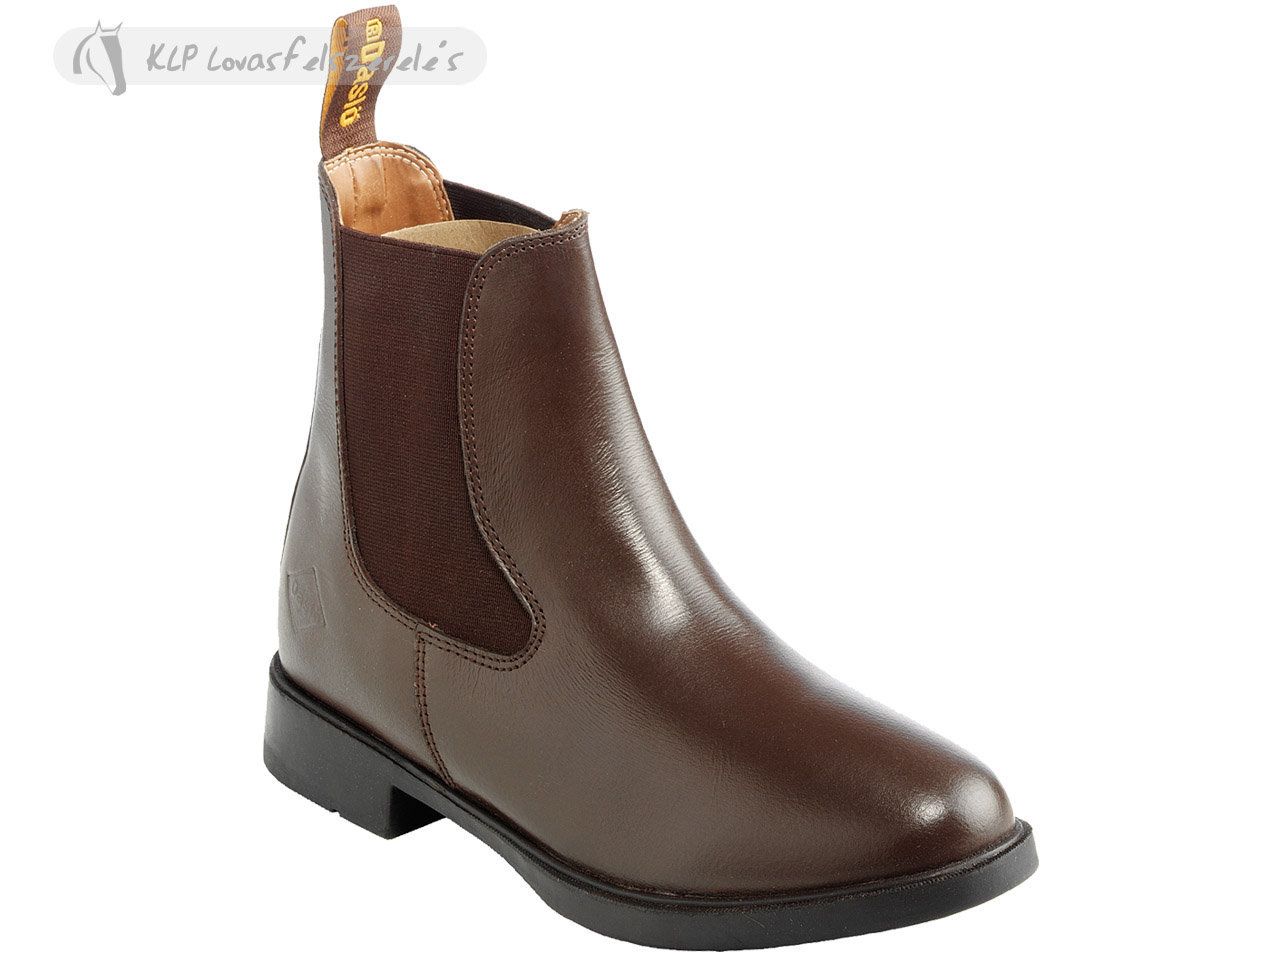 Daslö Shiny Leather Short Riding Boots - KLP Lovasfelszerelés